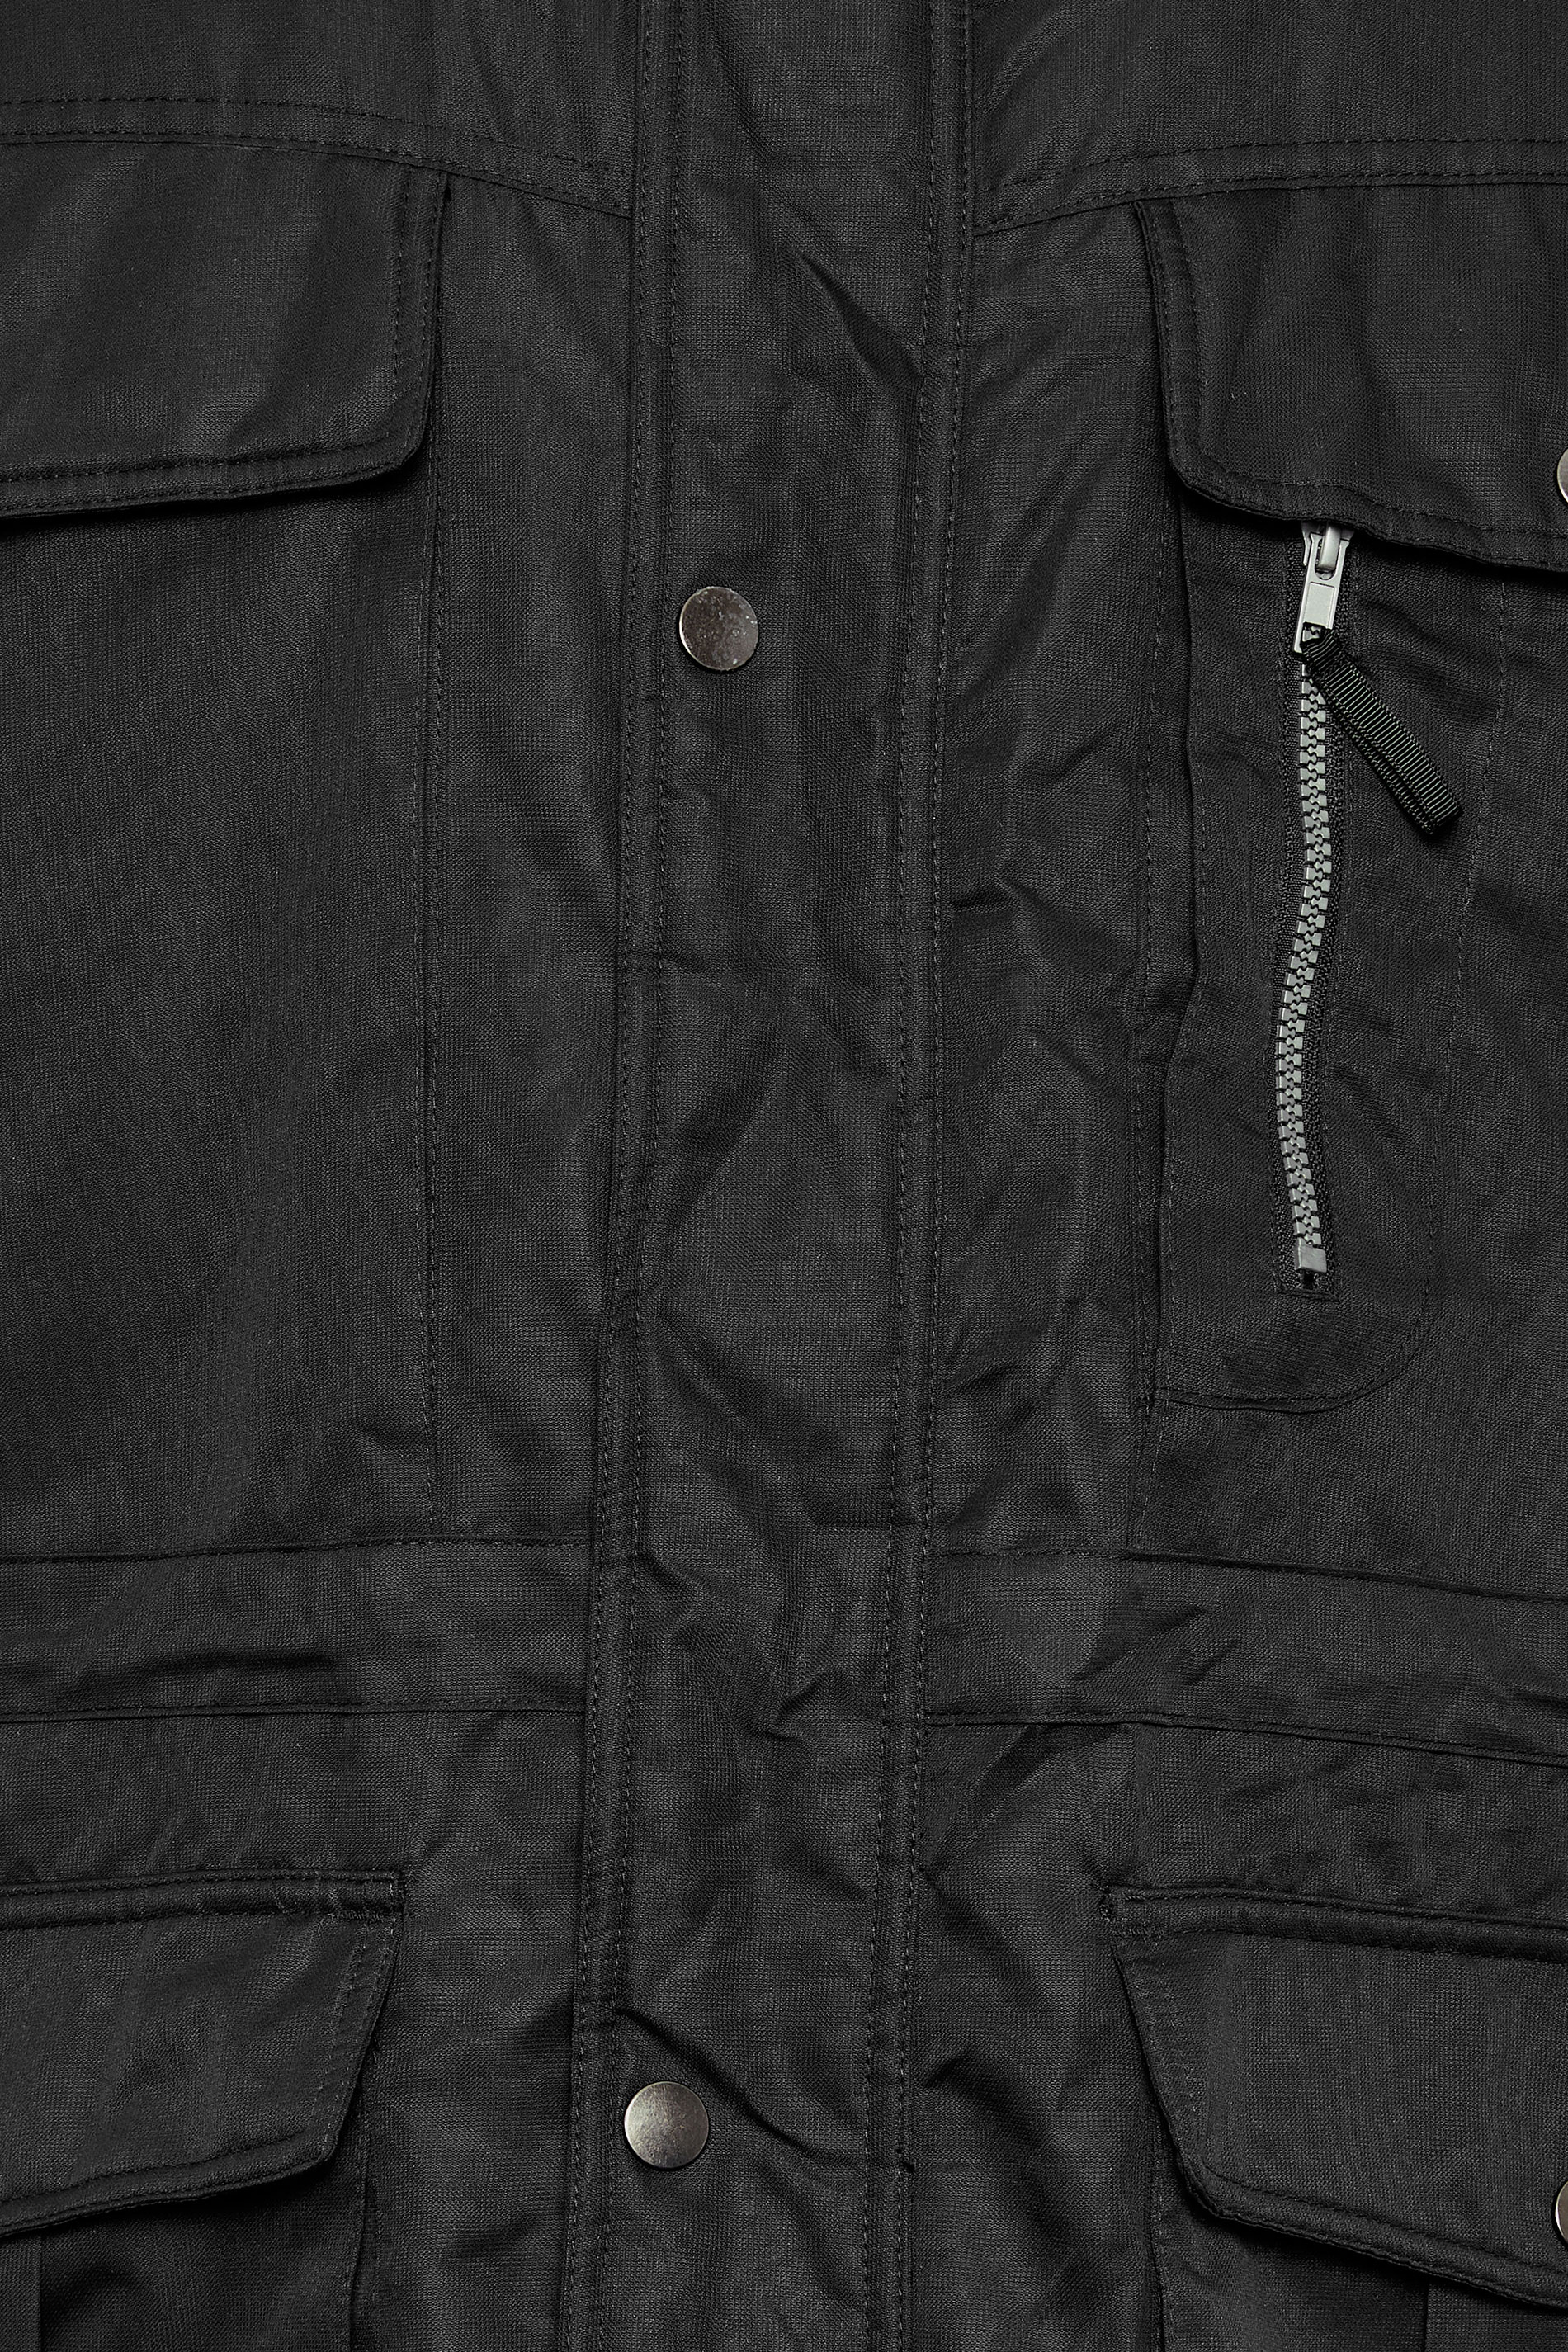 BadRhino Big & Tall Black Fleece Lined Hooded Coat | BadRhino 3